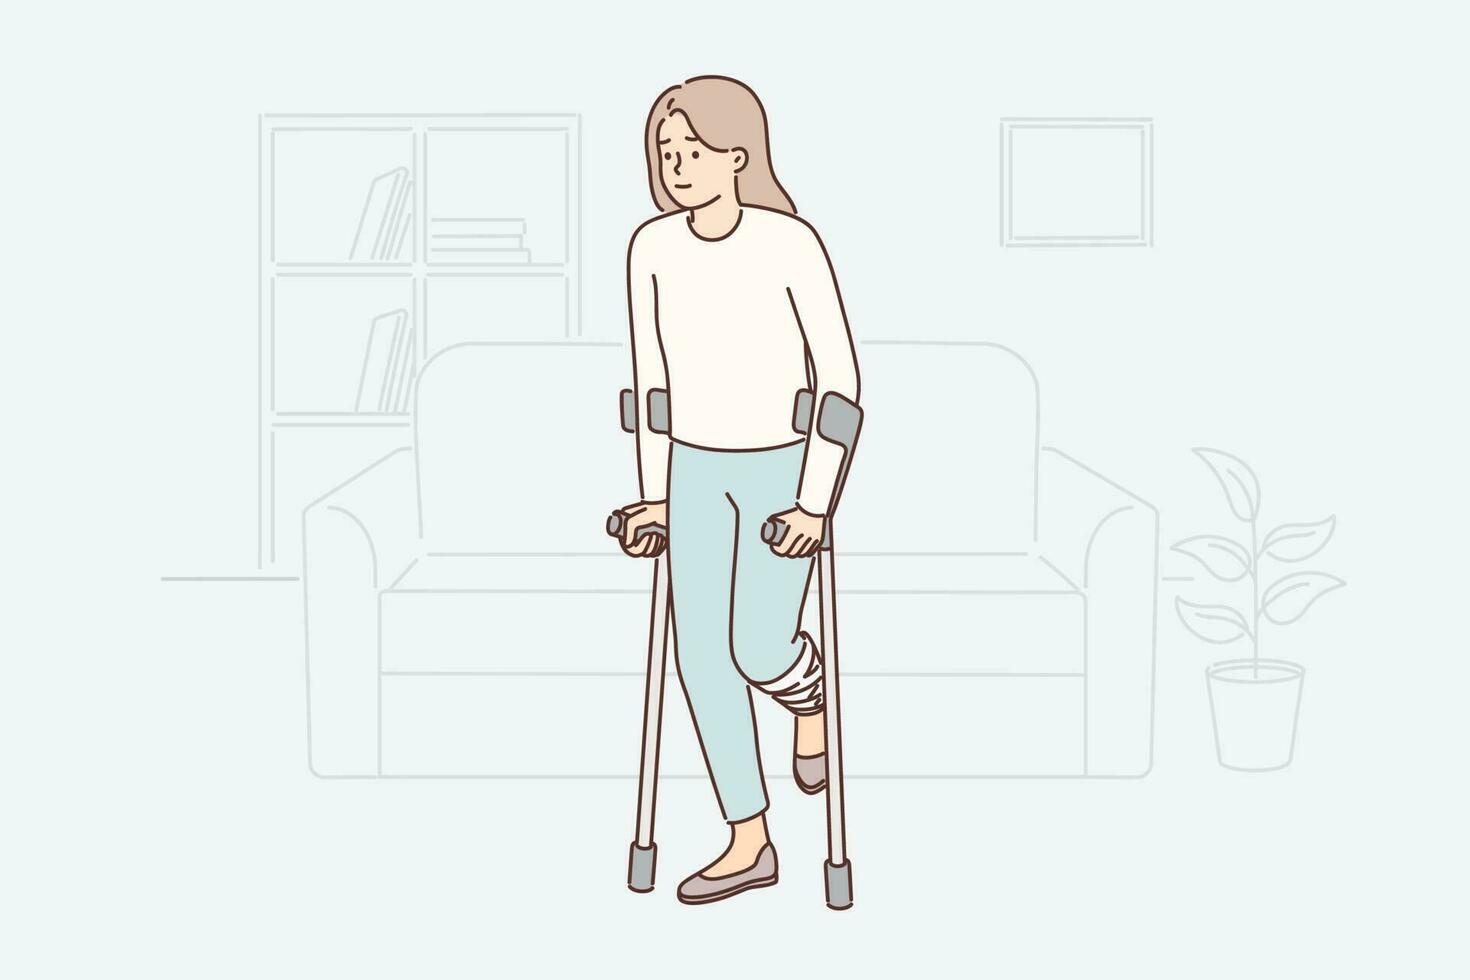 Inaktiverad kvinna få runt om med kryckor skadar knä under bil olycka eller falla. flicka med kryckor genomgår rehabilitering efter ben fraktur den där orsaker svårigheter för rörelse vektor